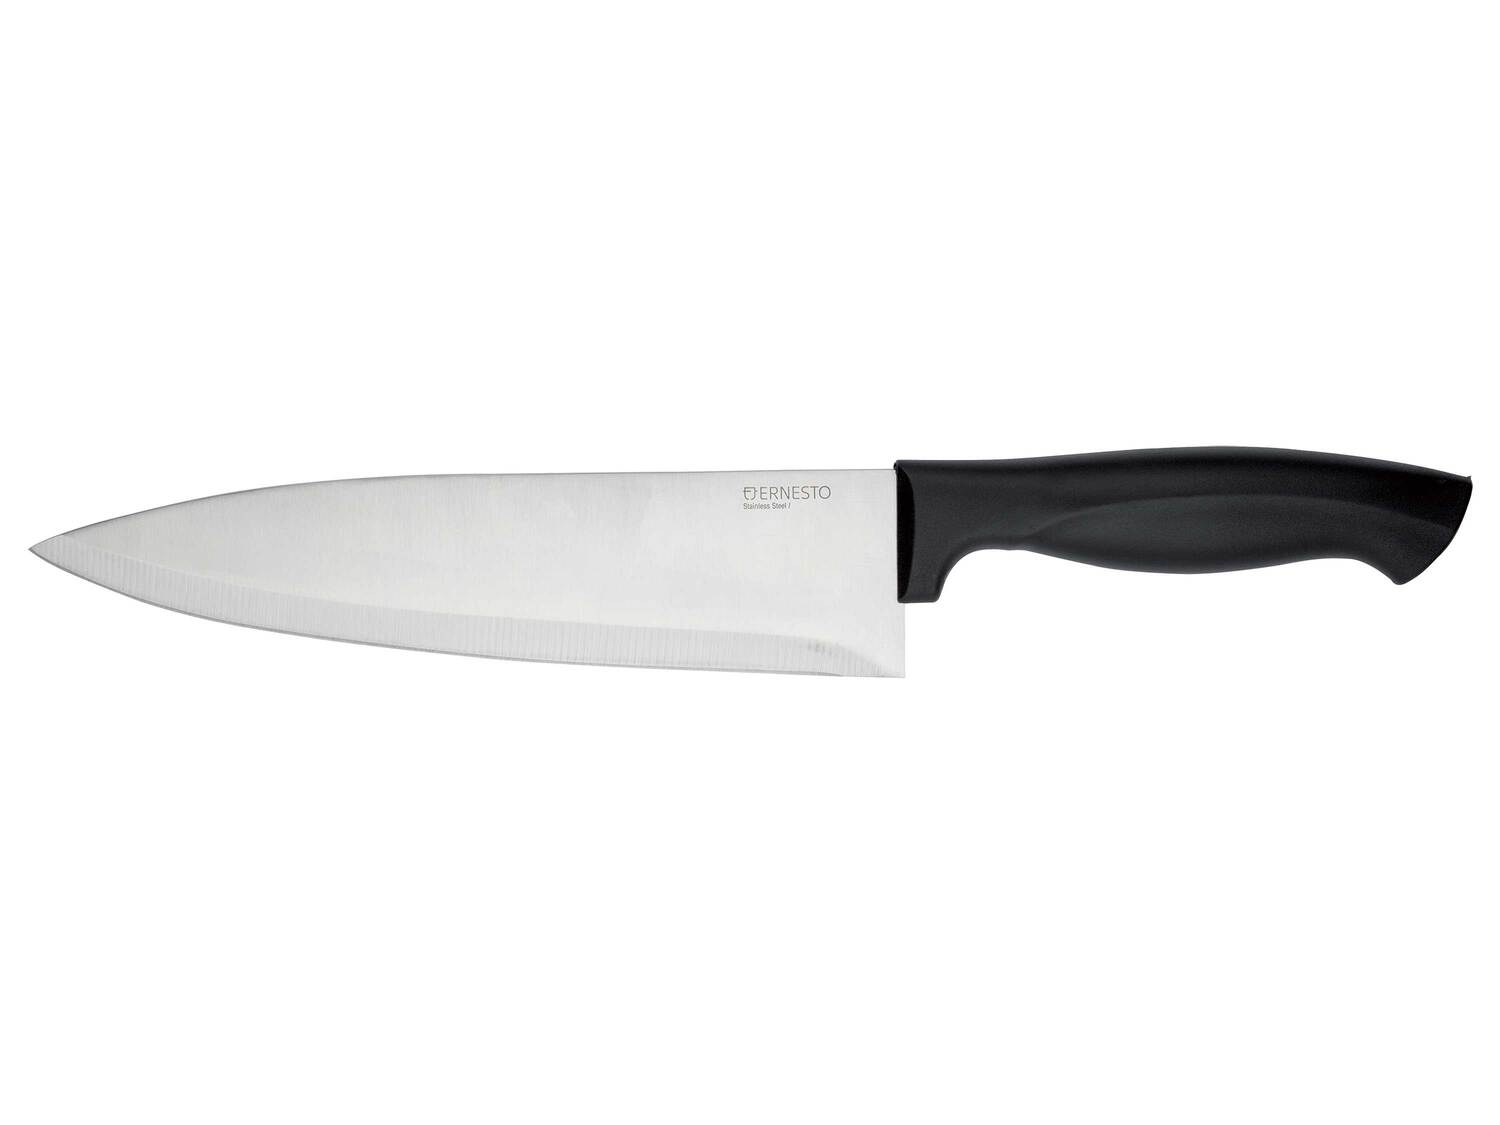 Couteau de cuisine , le prix 1.99 € 
- Au choix :
- Couteau à désosser / longueur ...